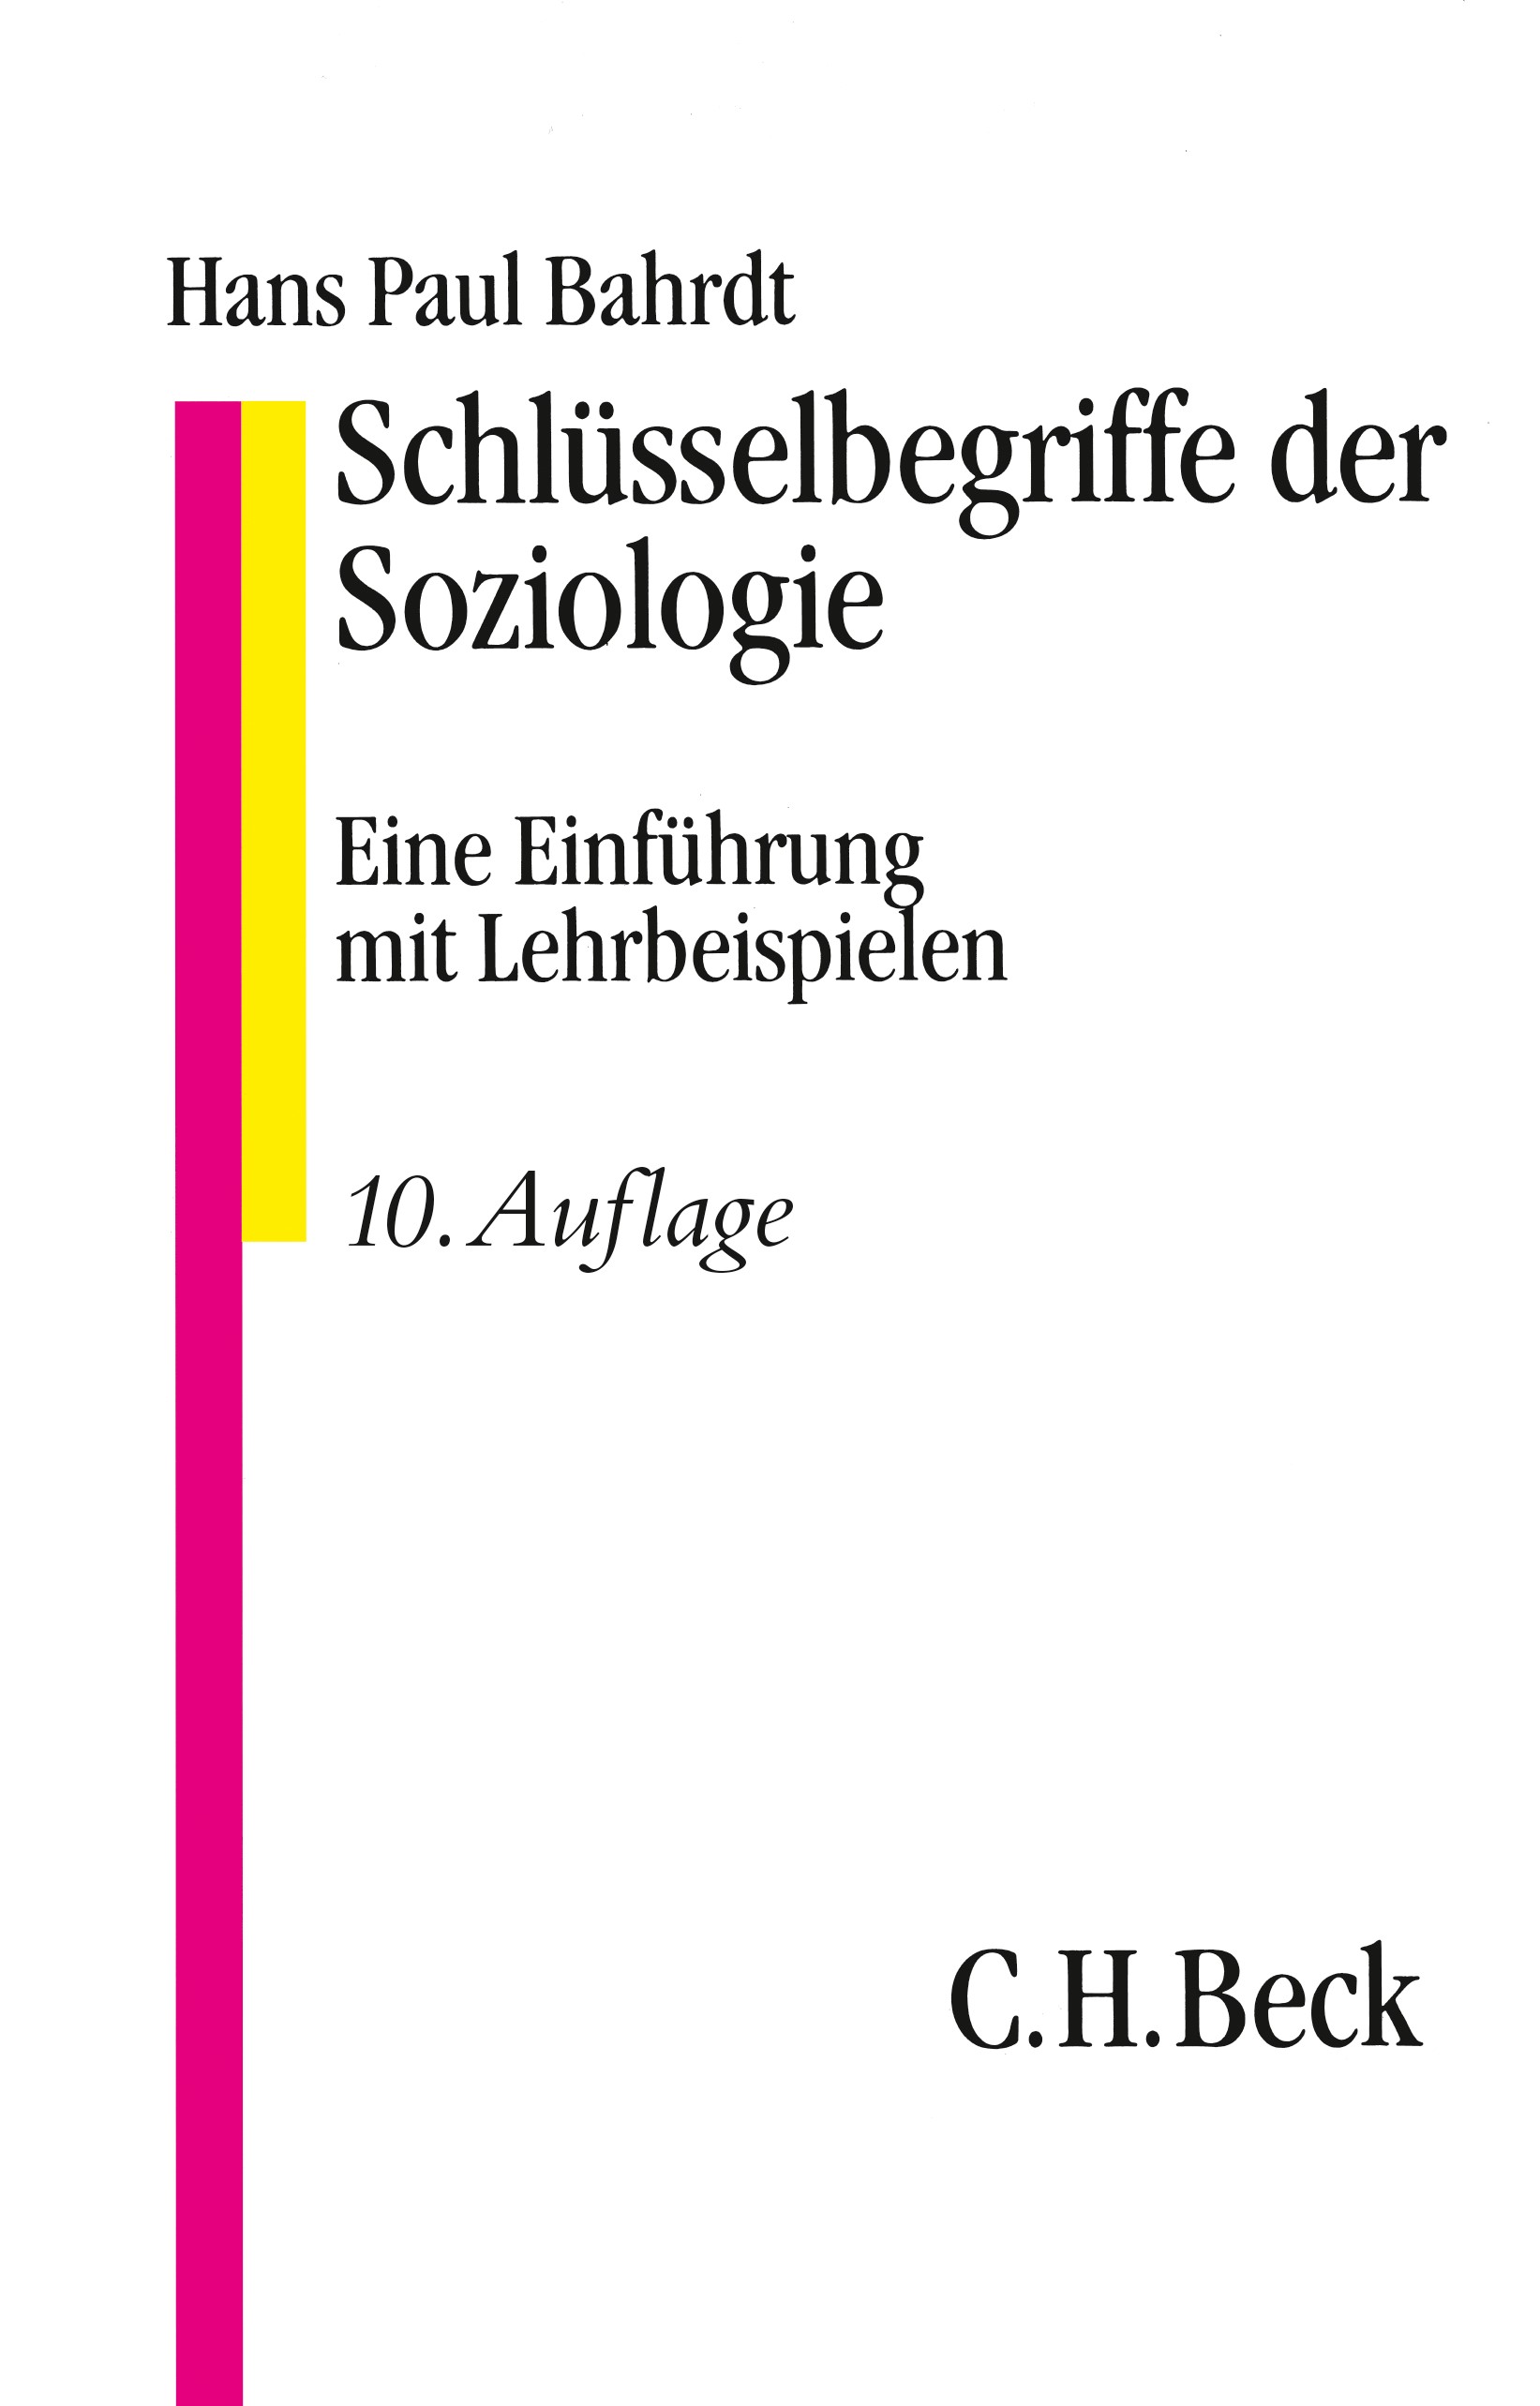 Cover: Bahrdt, Paul, Schlüsselbegriffe der Soziologie